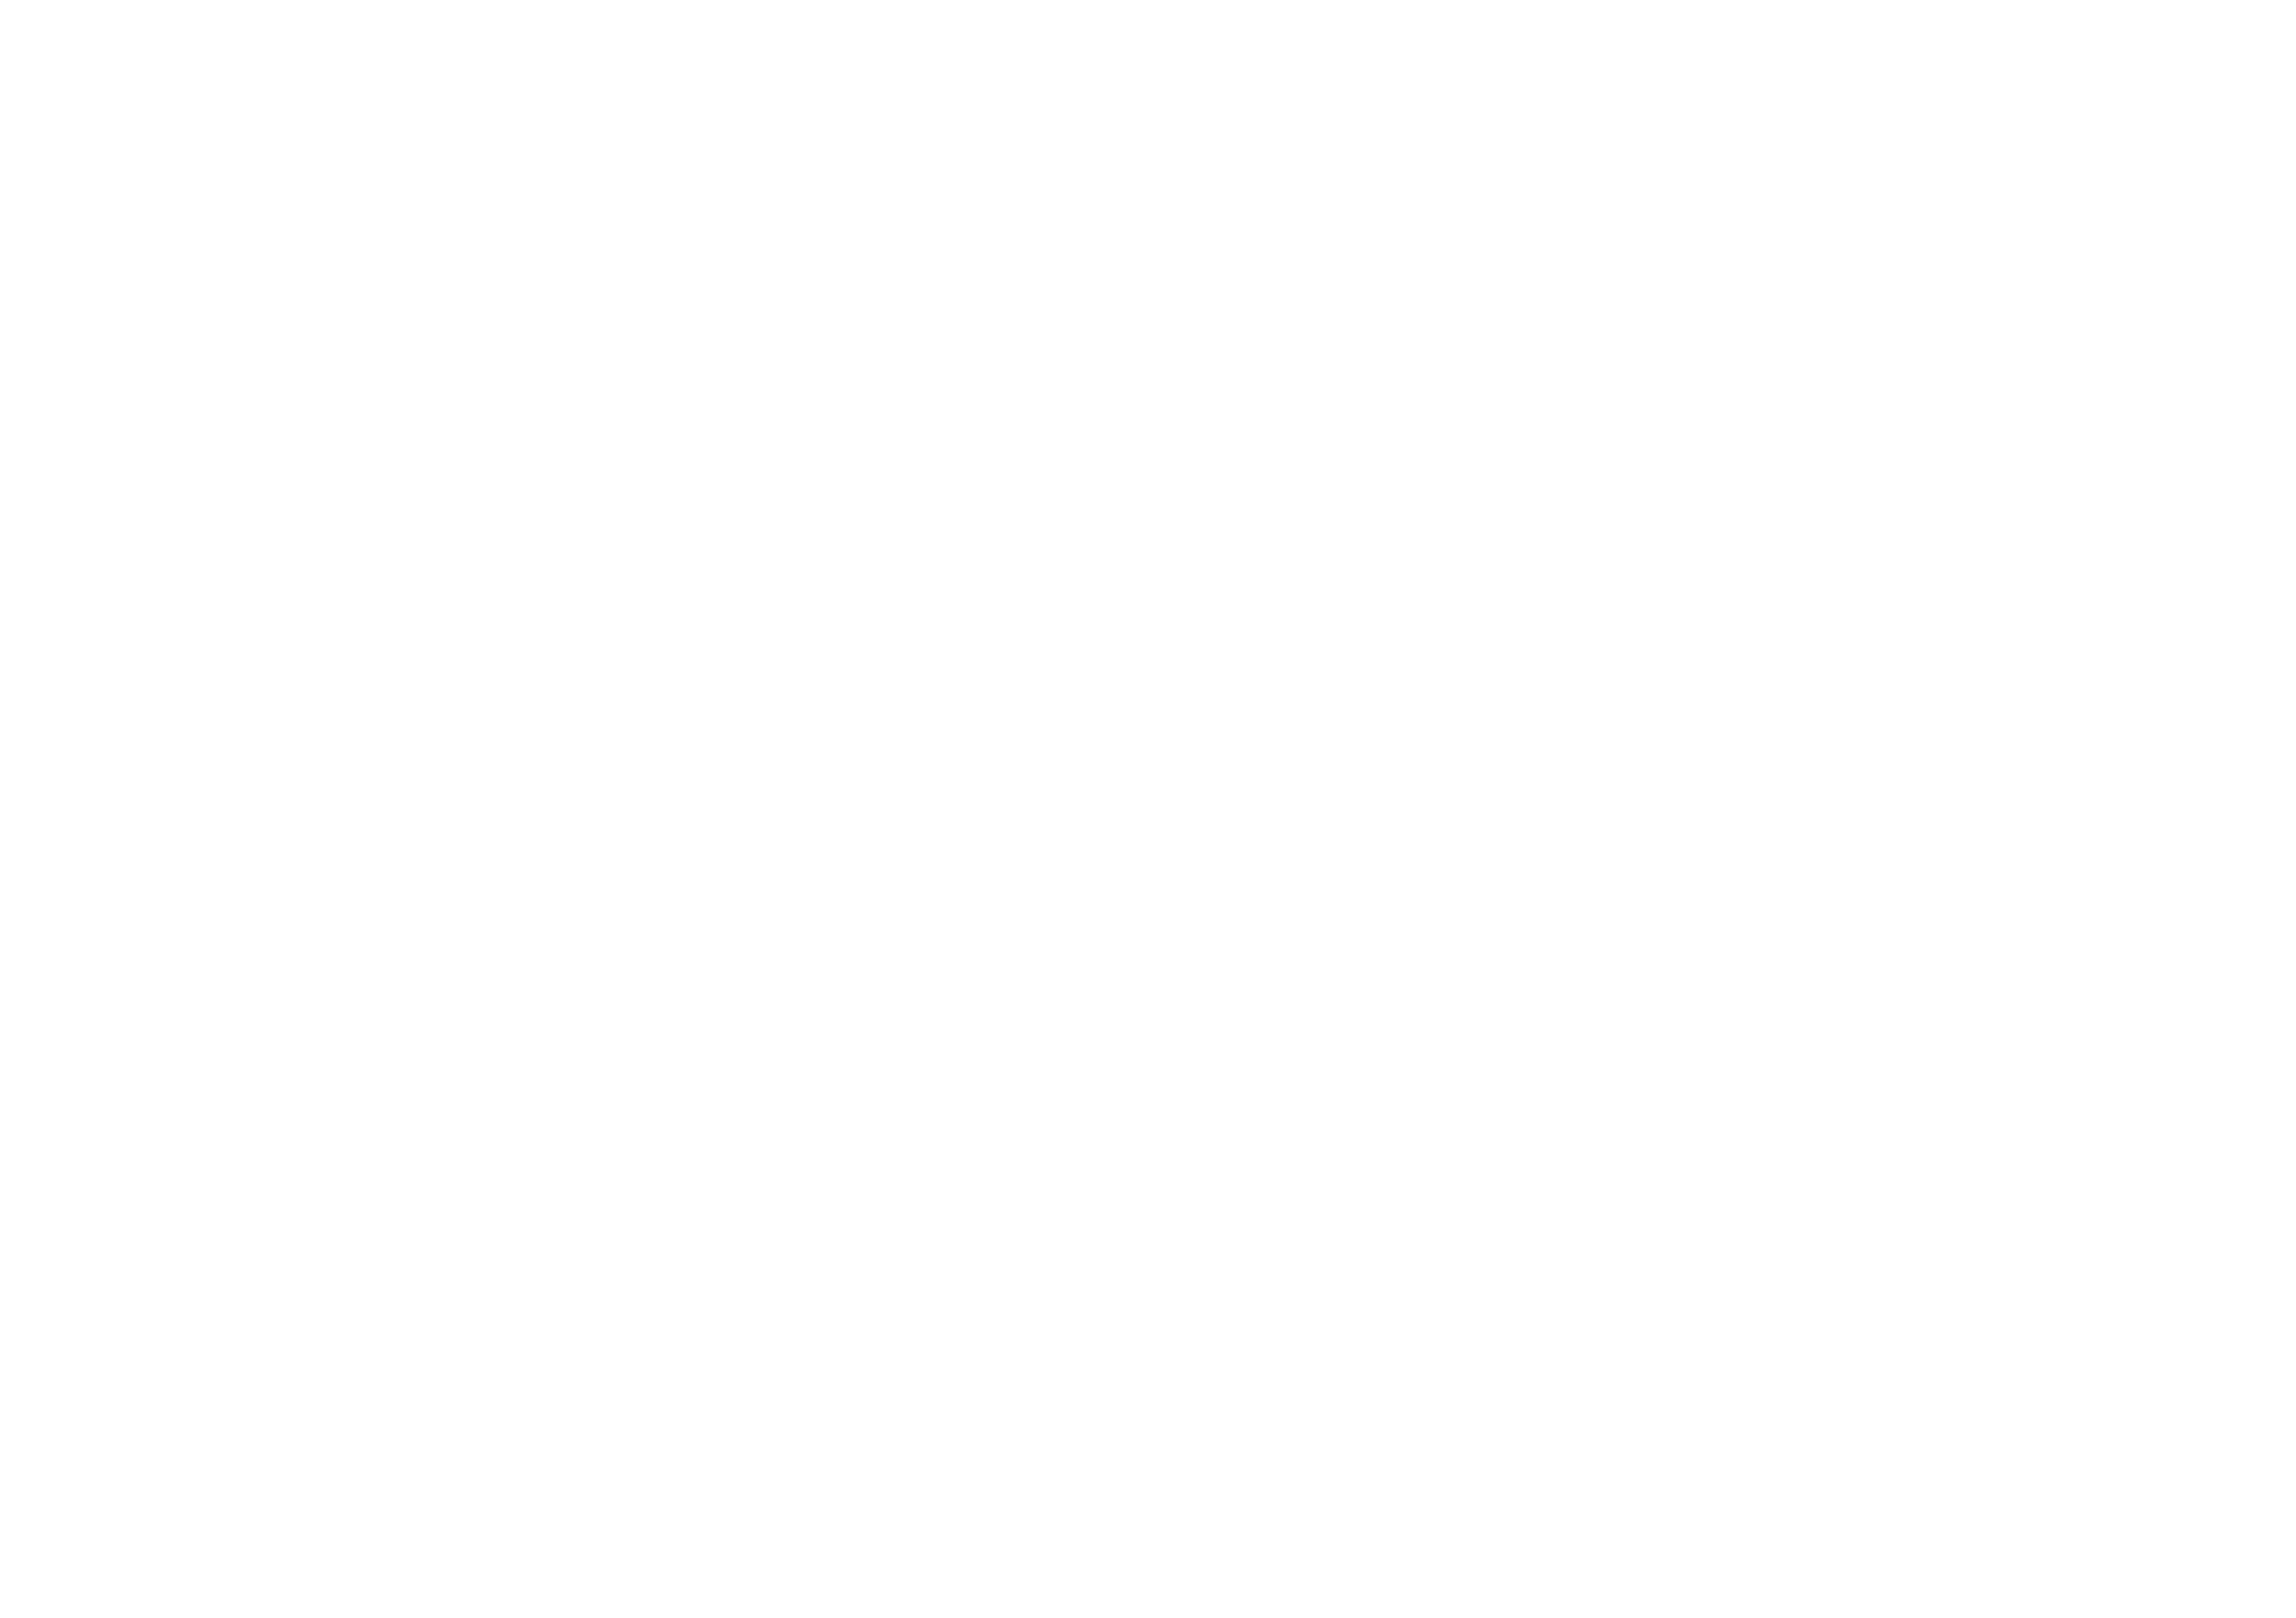 logo Cmb bianco